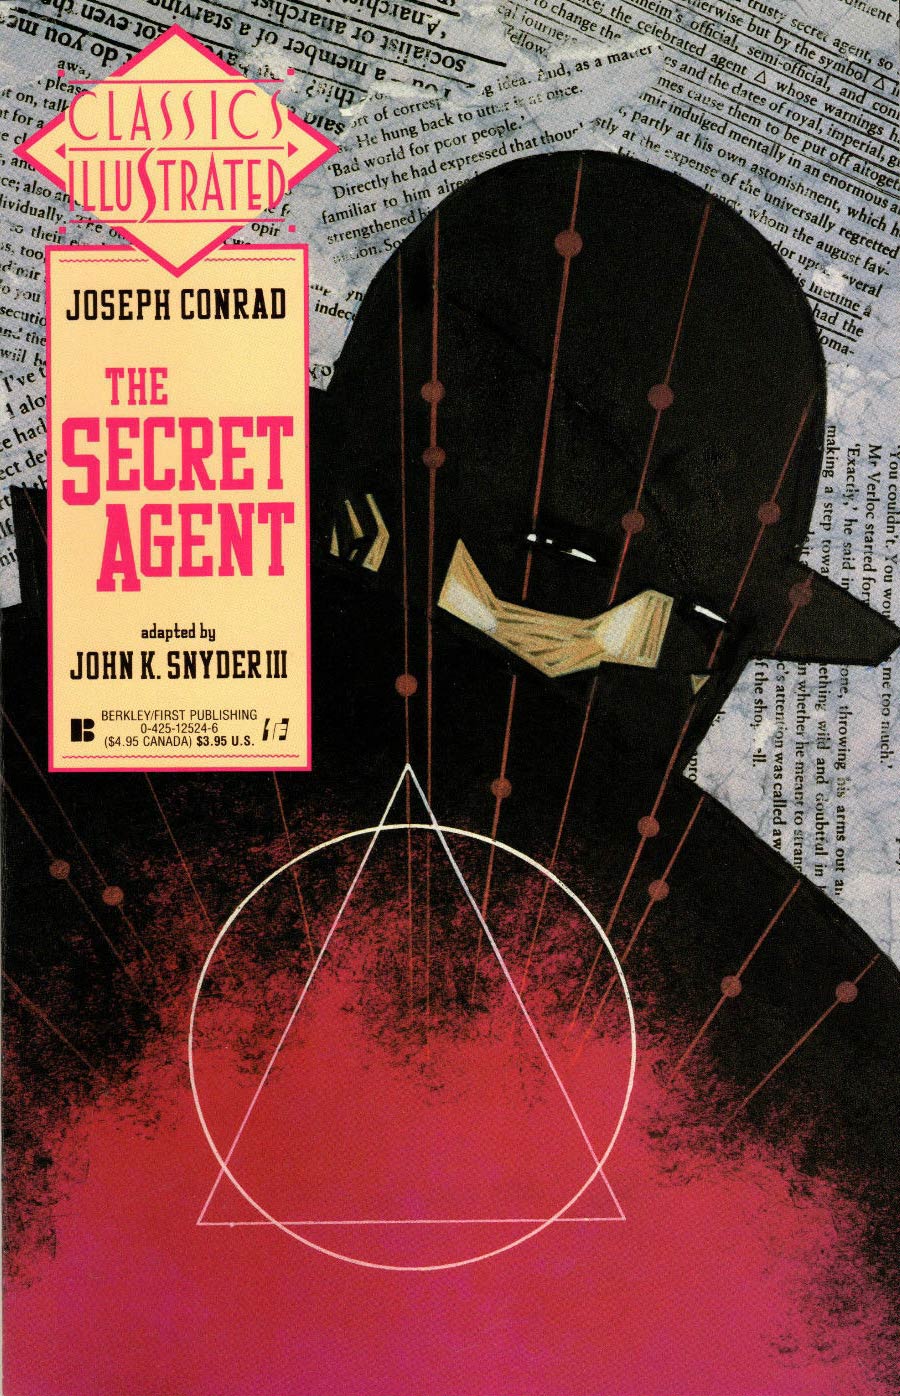 Classics Illustrated Vol 2 #19 The Secret Agent